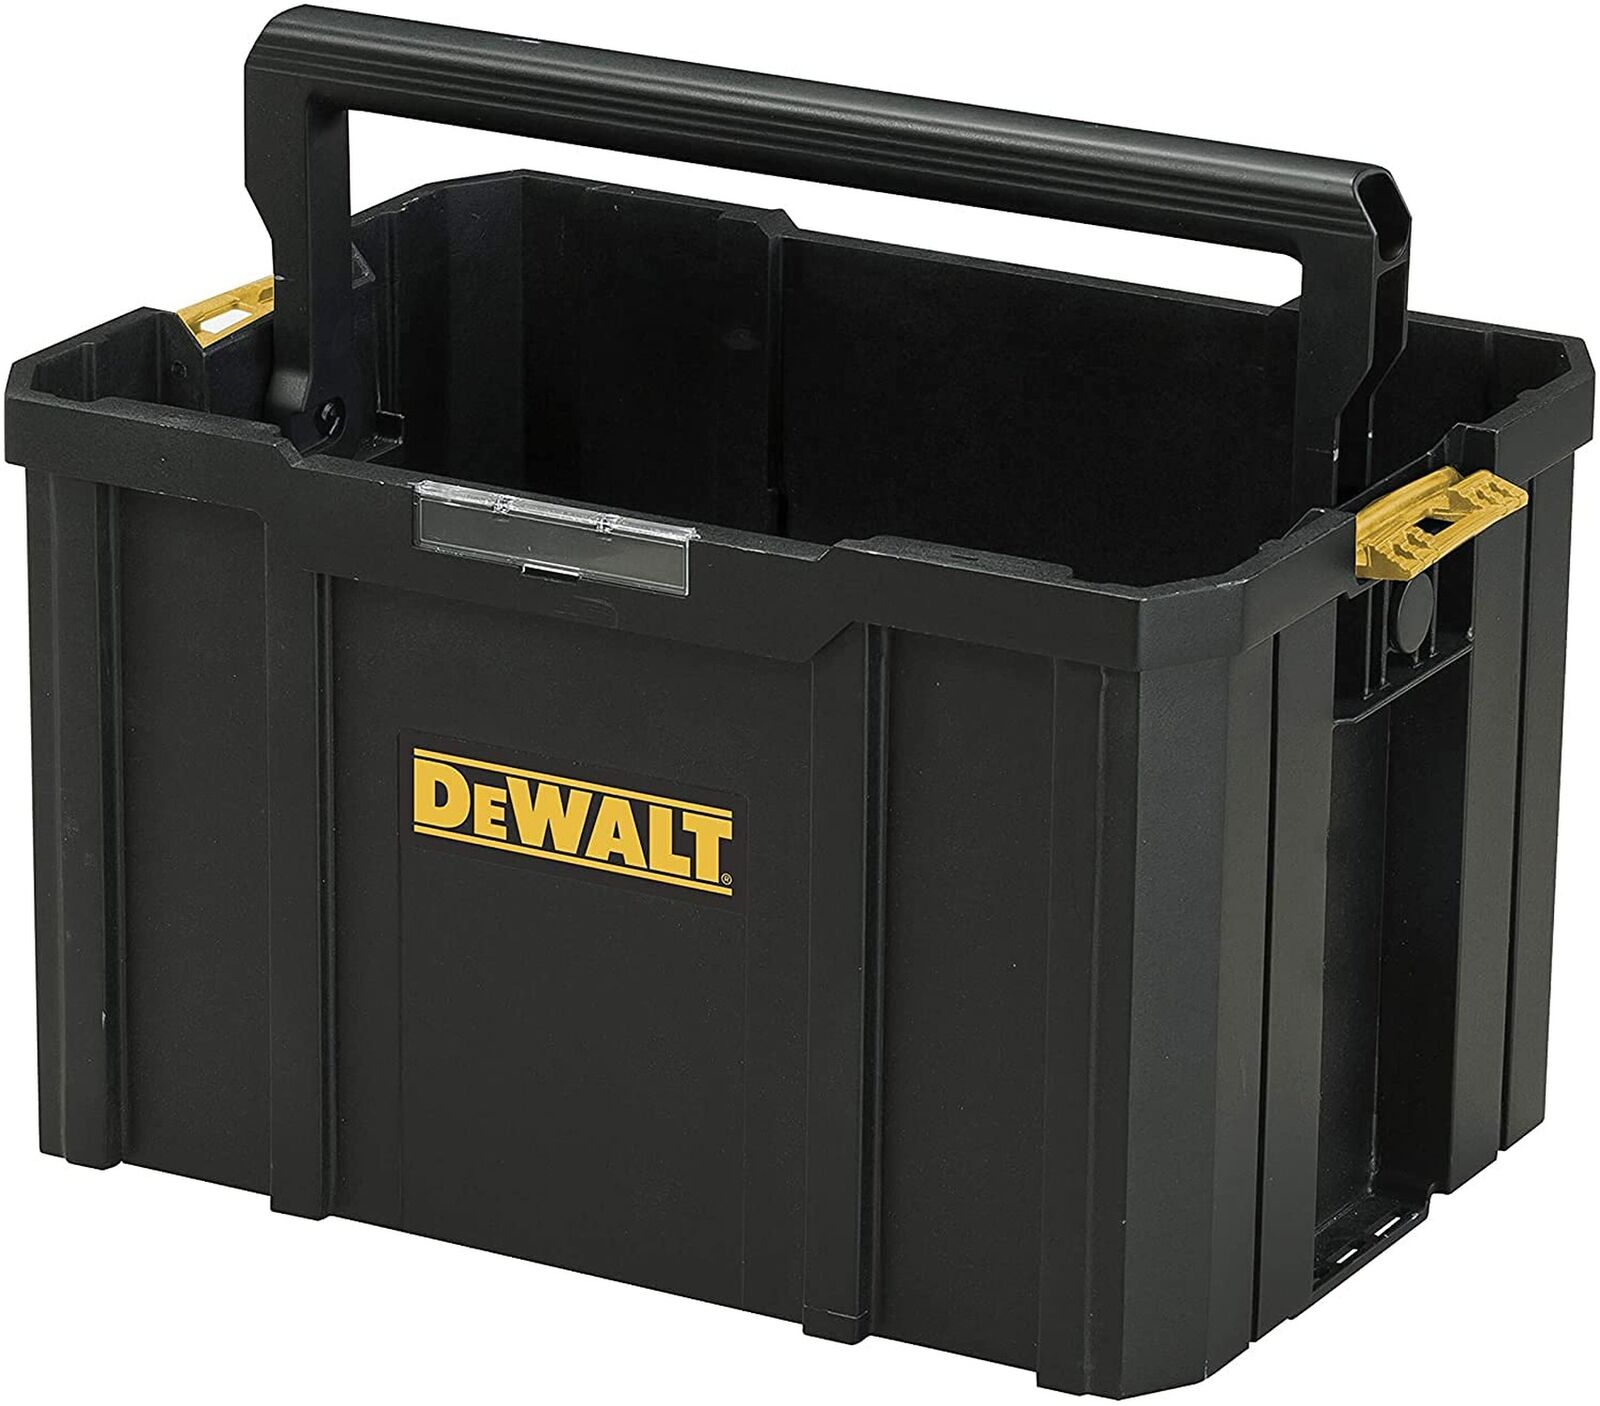 Dewalt Xr T-Stak Tool Case - DWST171228 - Open Tote Box